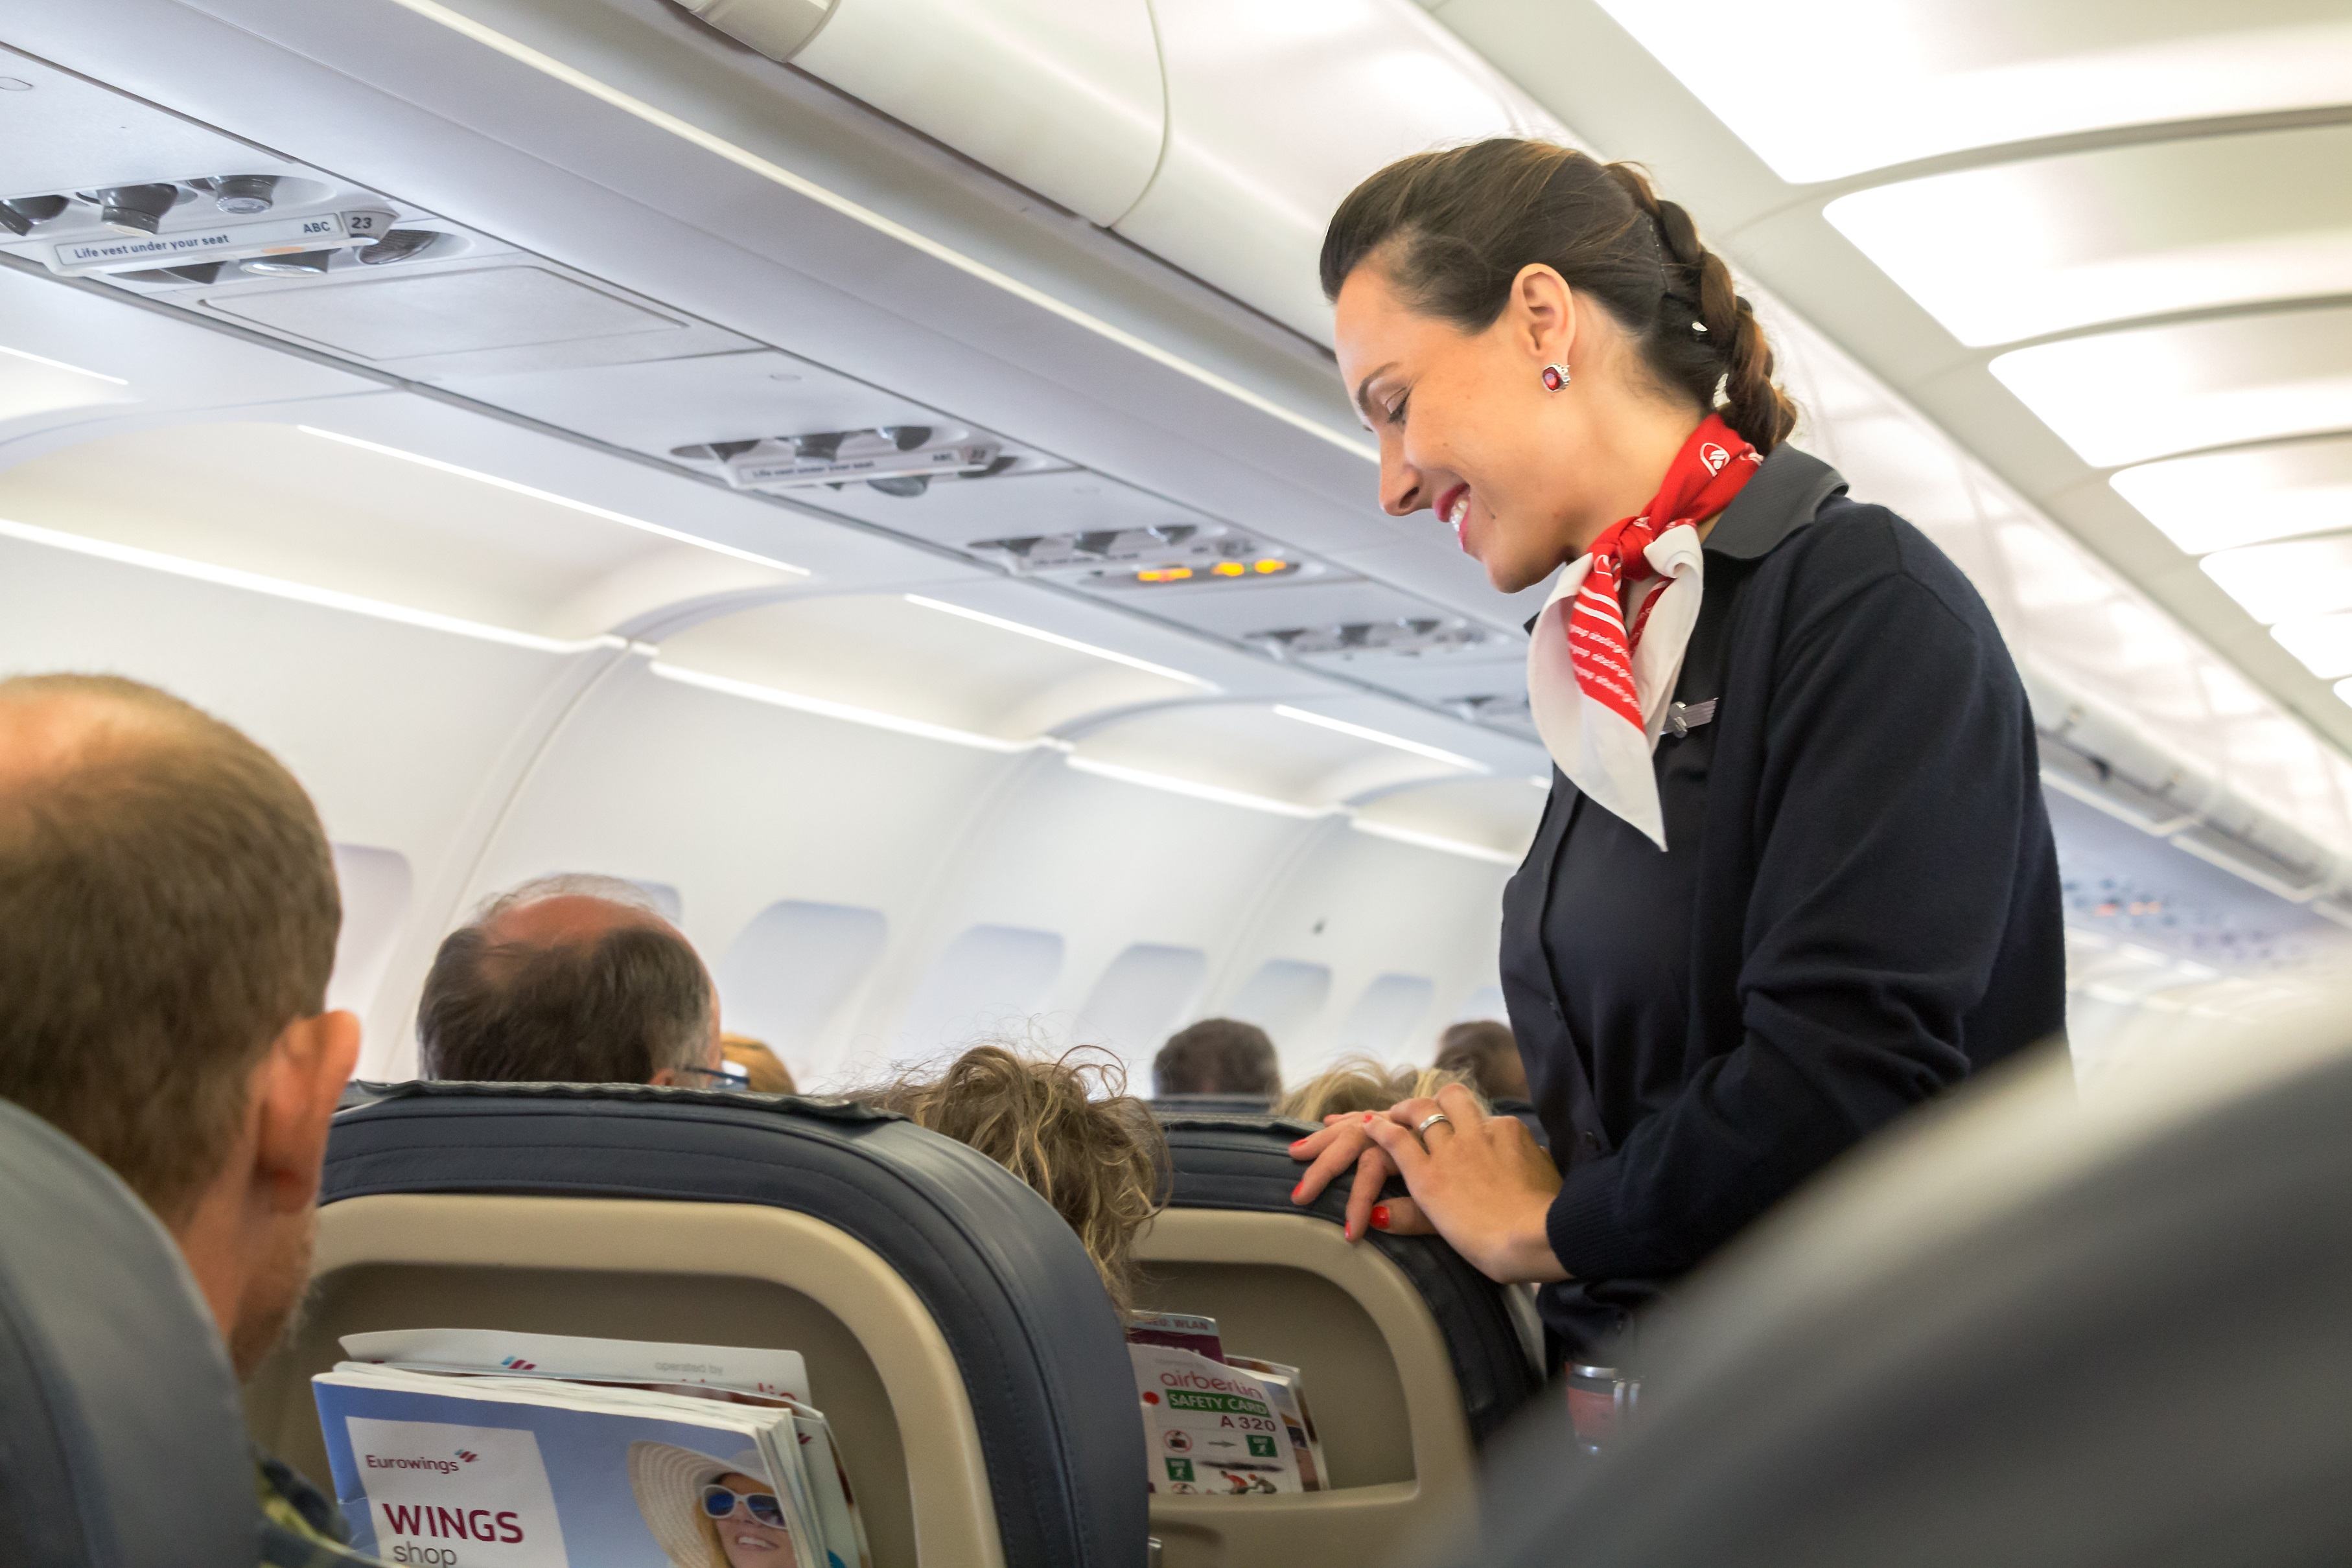 The Weirdest Rules Flight Attendants Must Follow